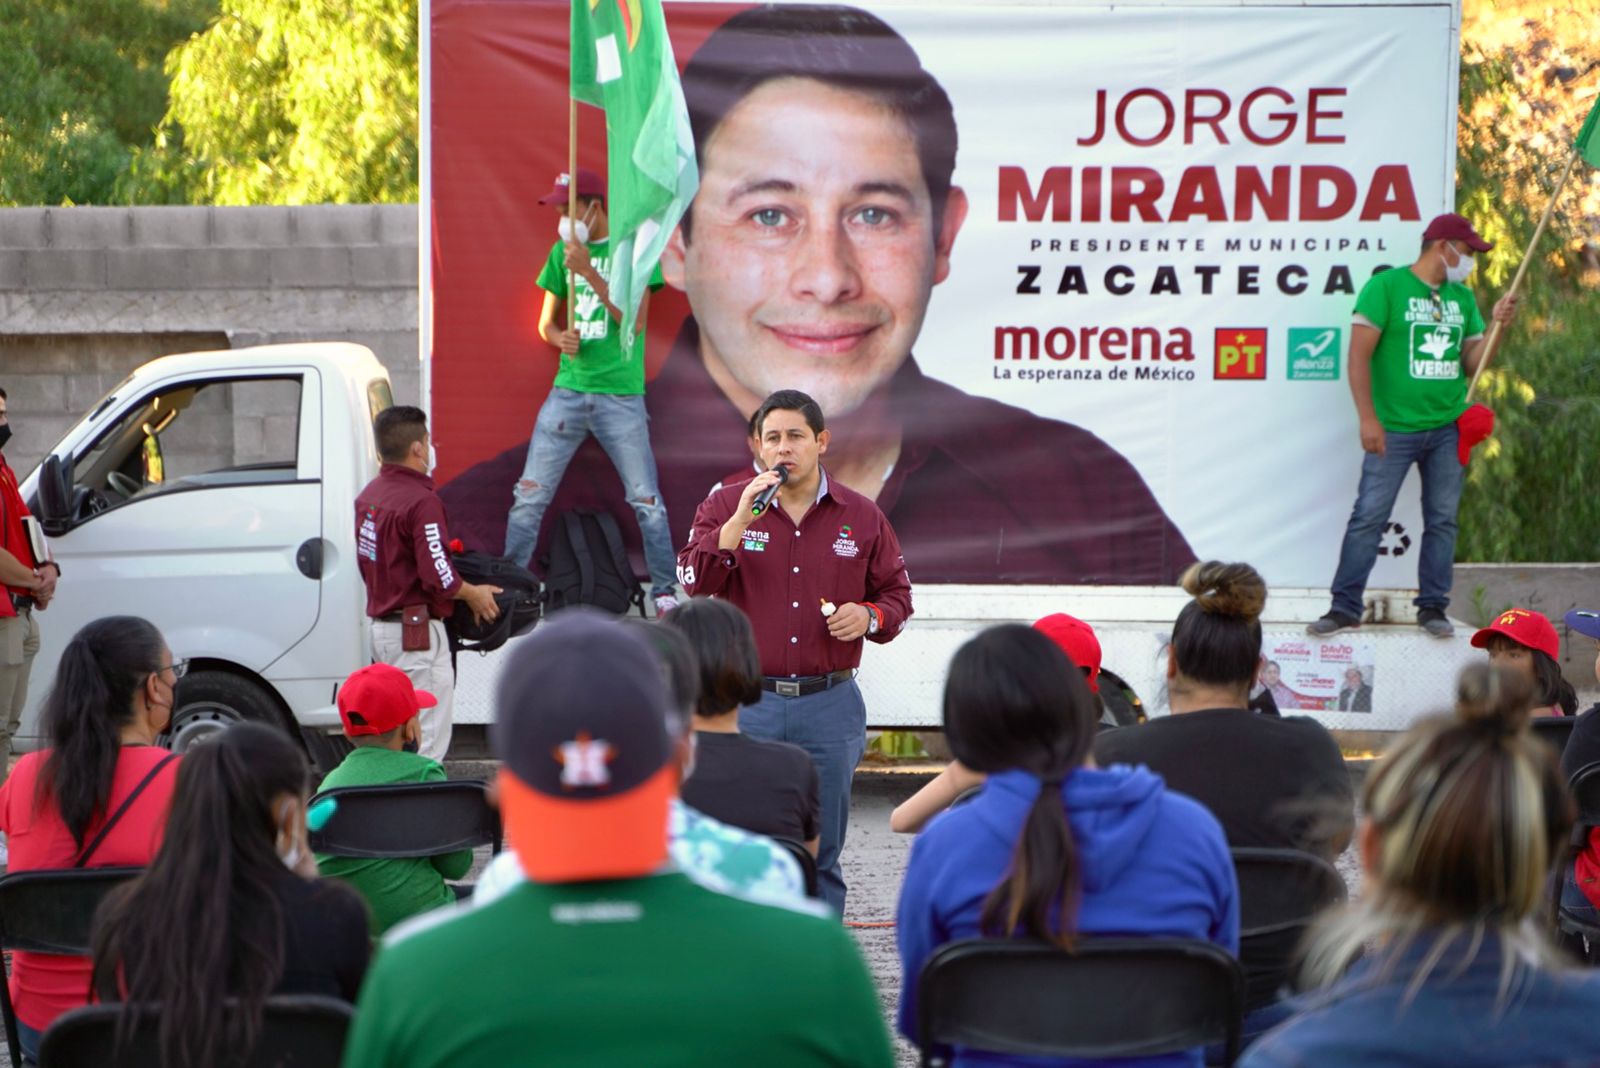 Se compromete Miranda a regresar la seguridad a Zacatecas